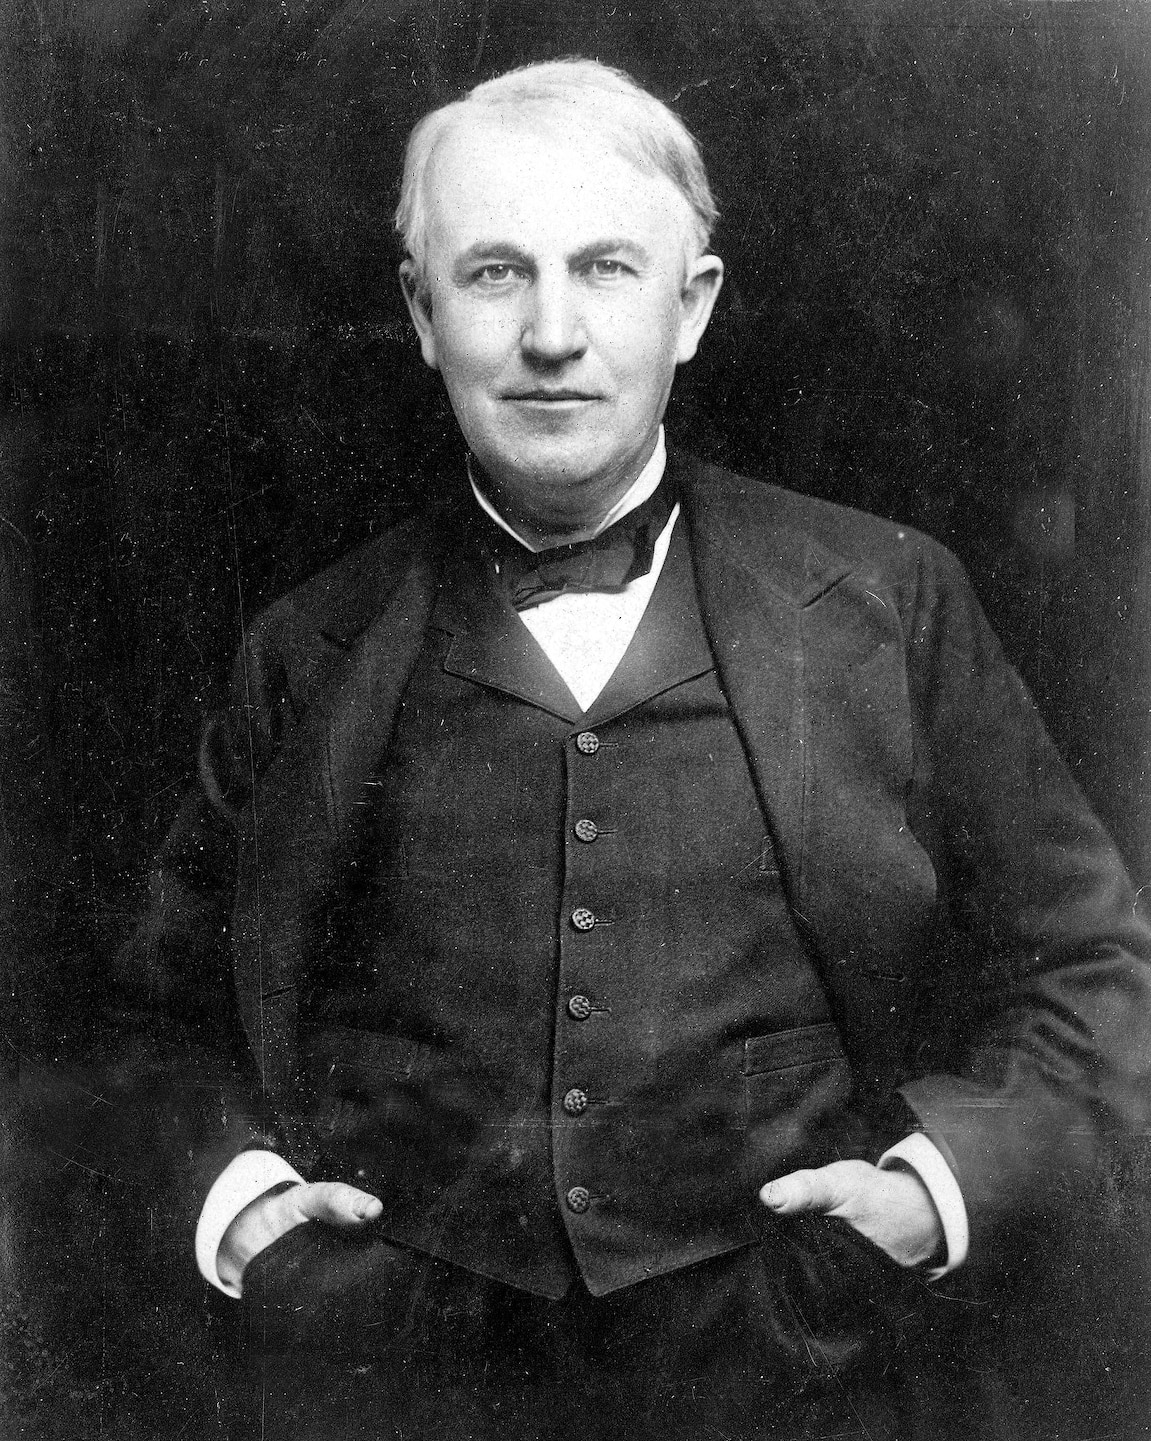 Thomas Edison được trao bằng sáng chế hơn 1000 phát minh trong suốt sự nghiệp của mình, bao gồm máy hát, đèn điện và micro. Ảnh: Popperfoto/Getty Images.